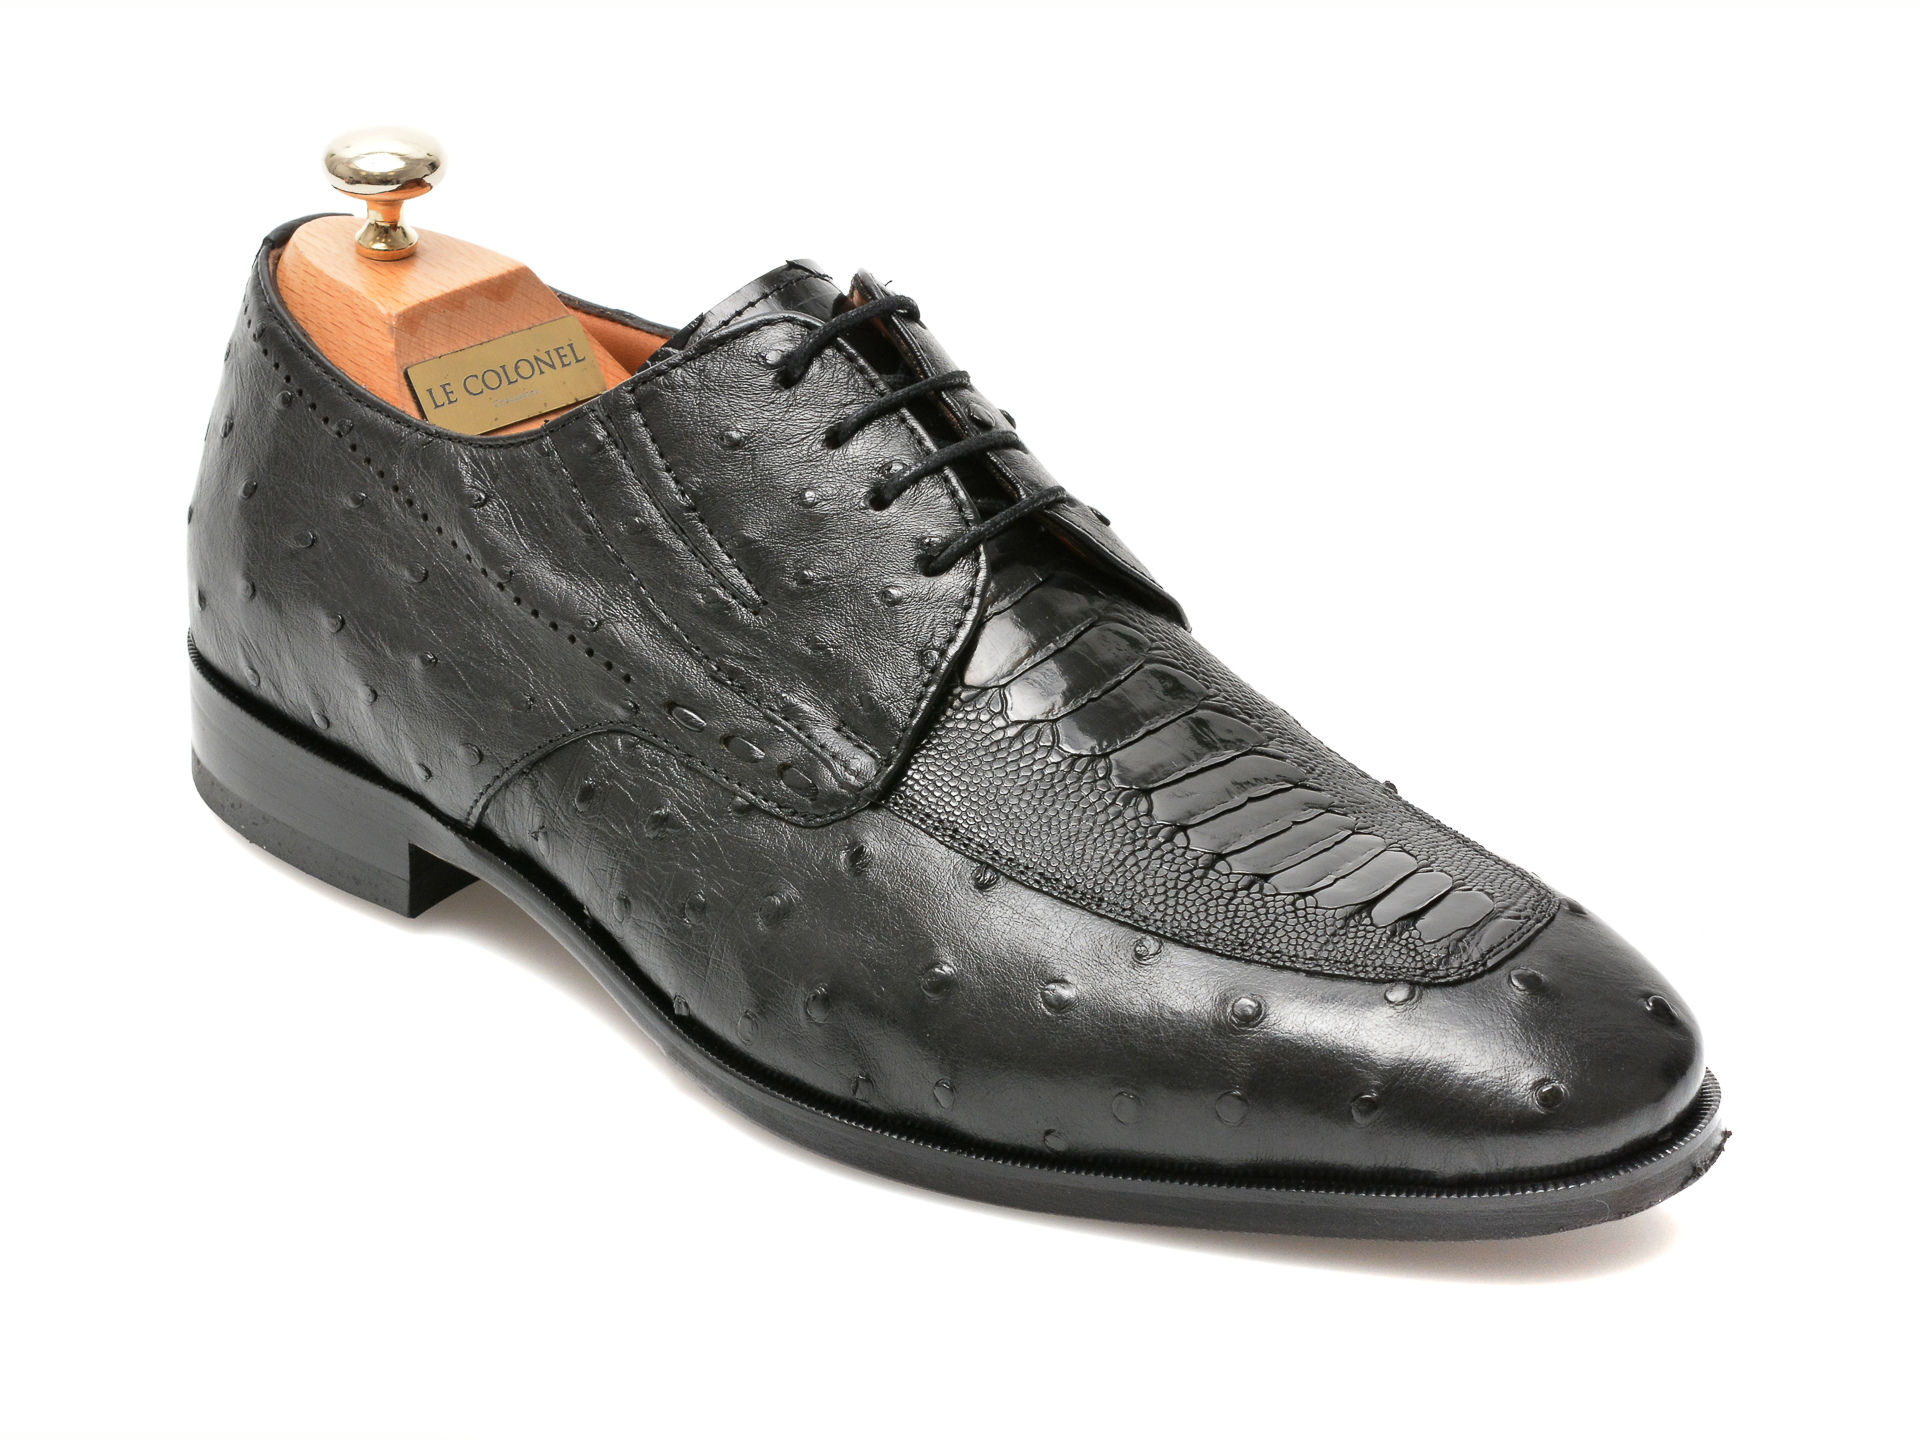 Pantofi LE COLONEL negri, 48701, din piele naturala Le Colonel imagine 2022 reducere